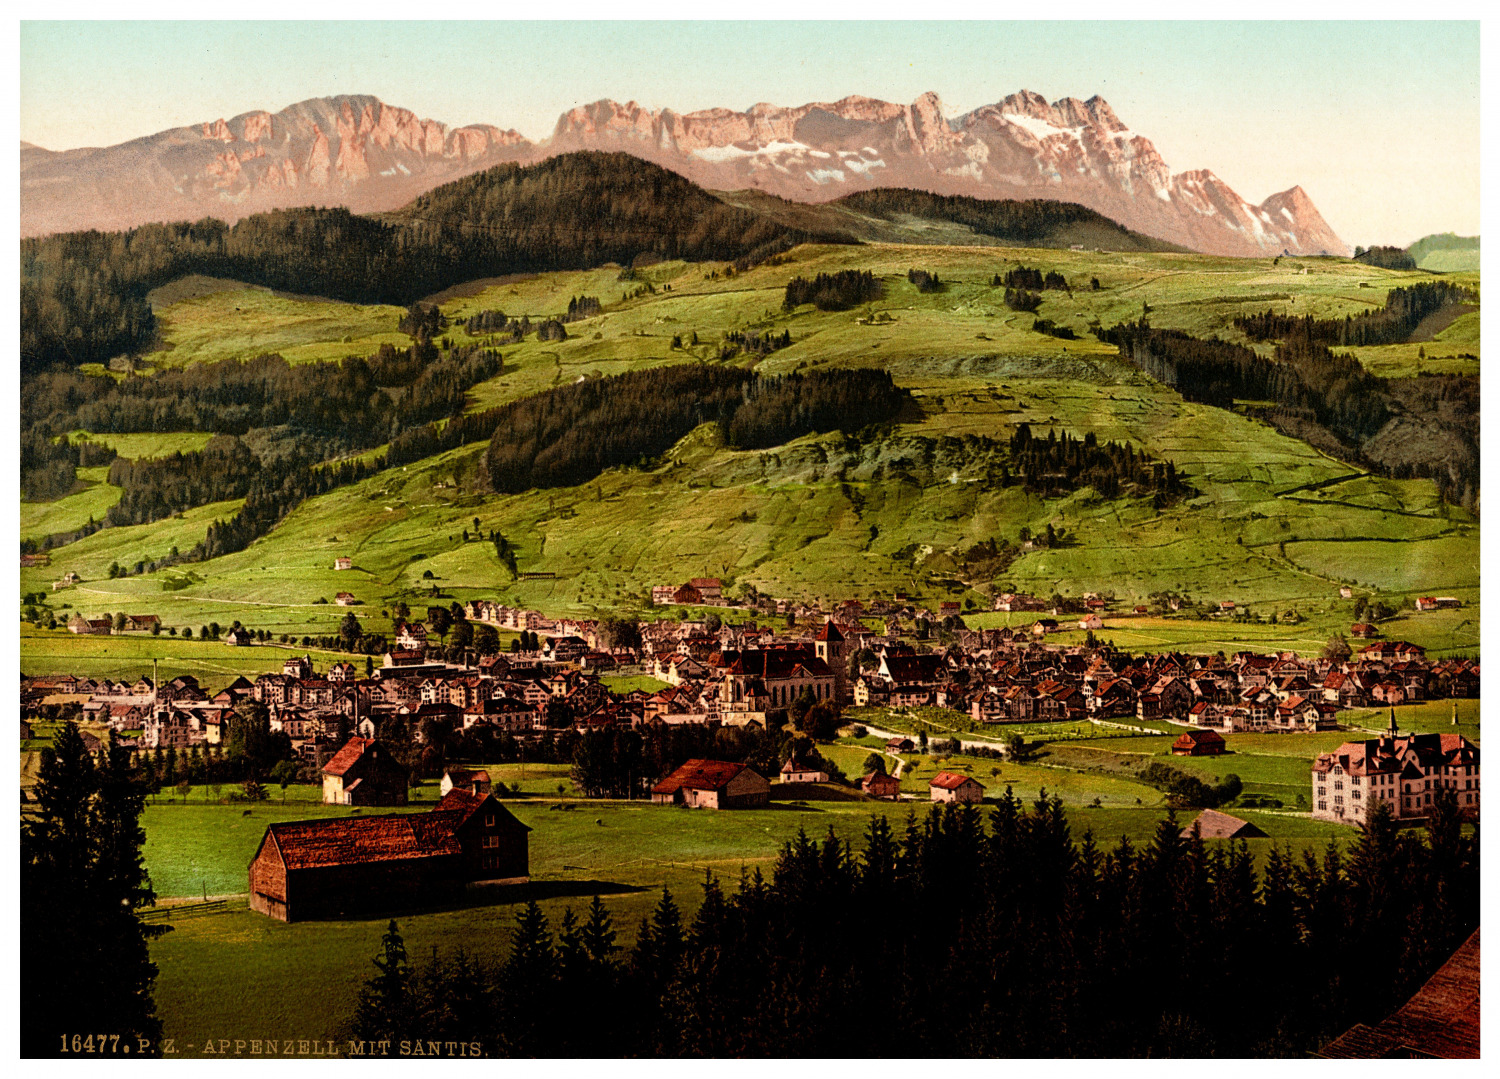 Switzerland, Appenzell. Appenzell with Säntis. vintage print photochromie, vintage p